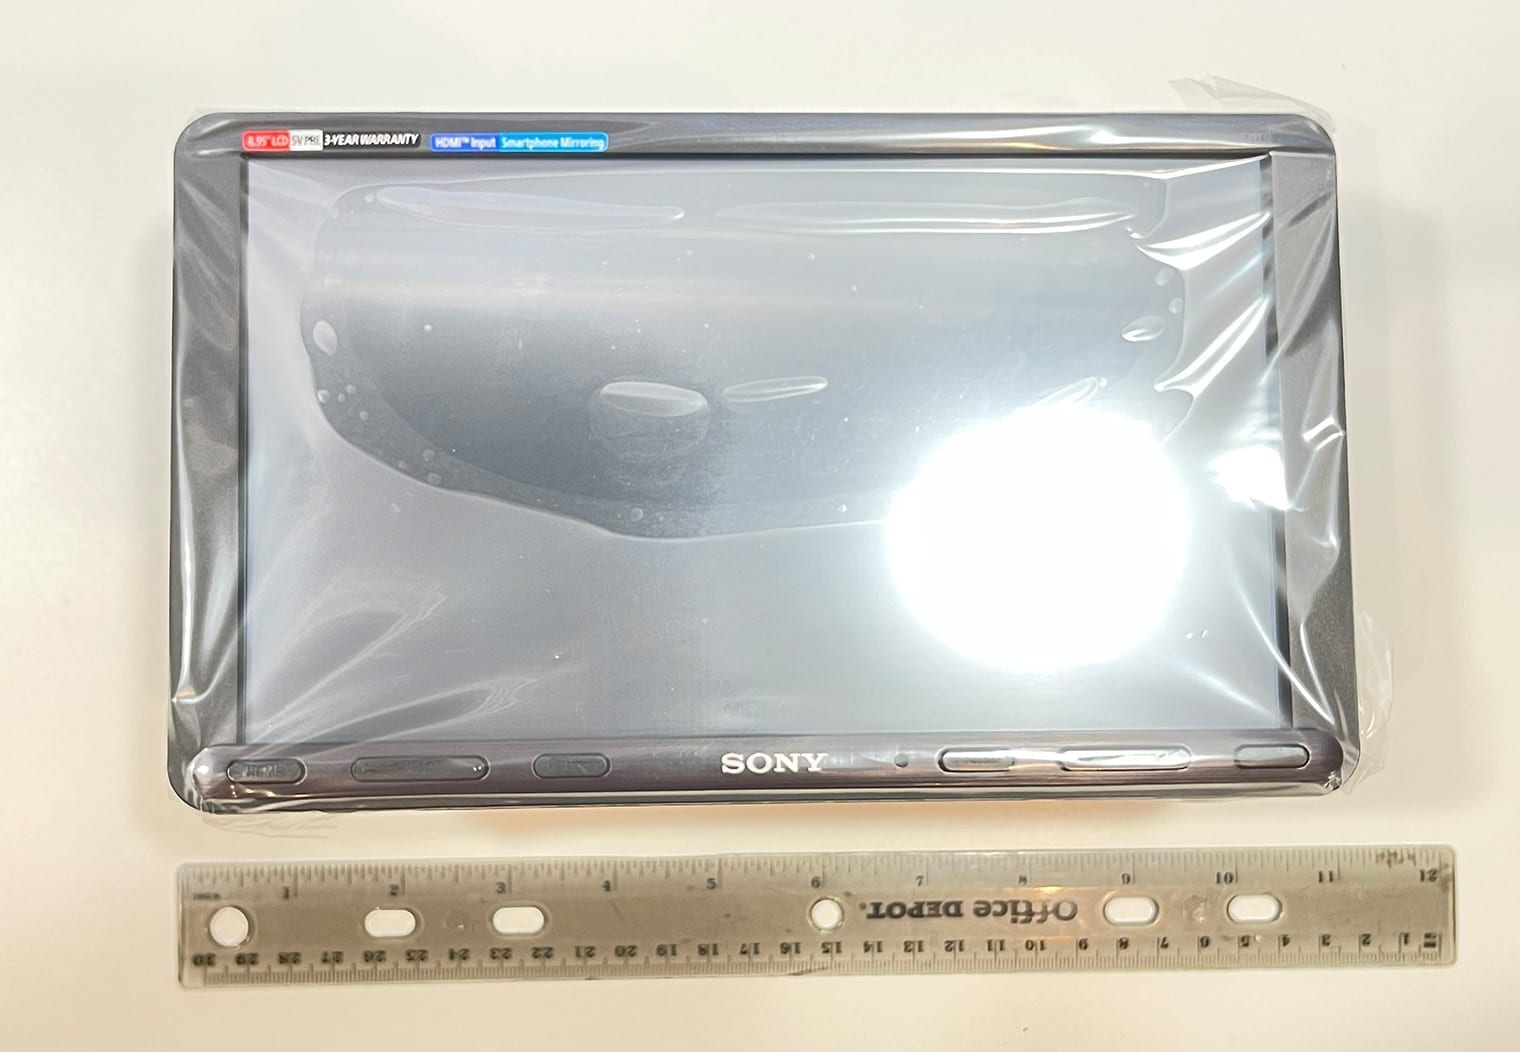 Sony XAV-AX8100 screen with ruler